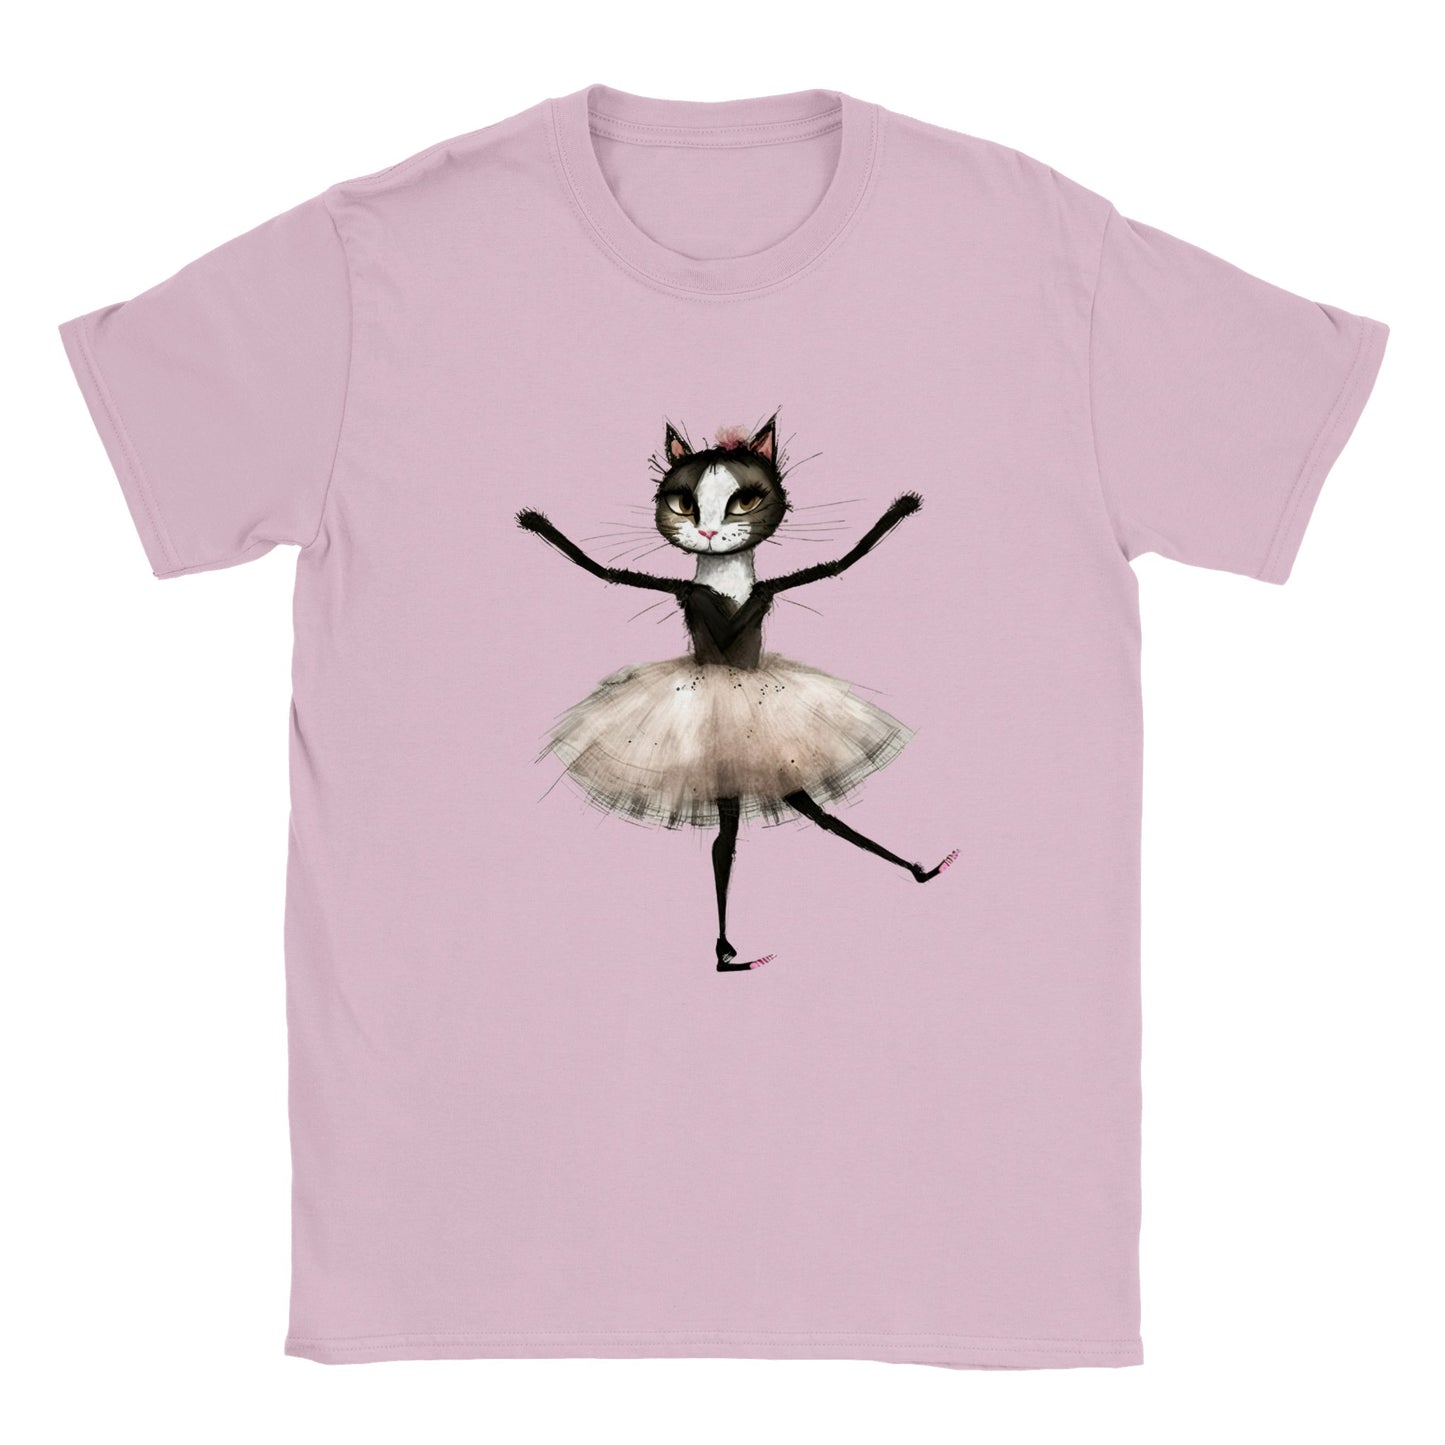 Kids pink t-shirt with a kitten ballerina in a tutu